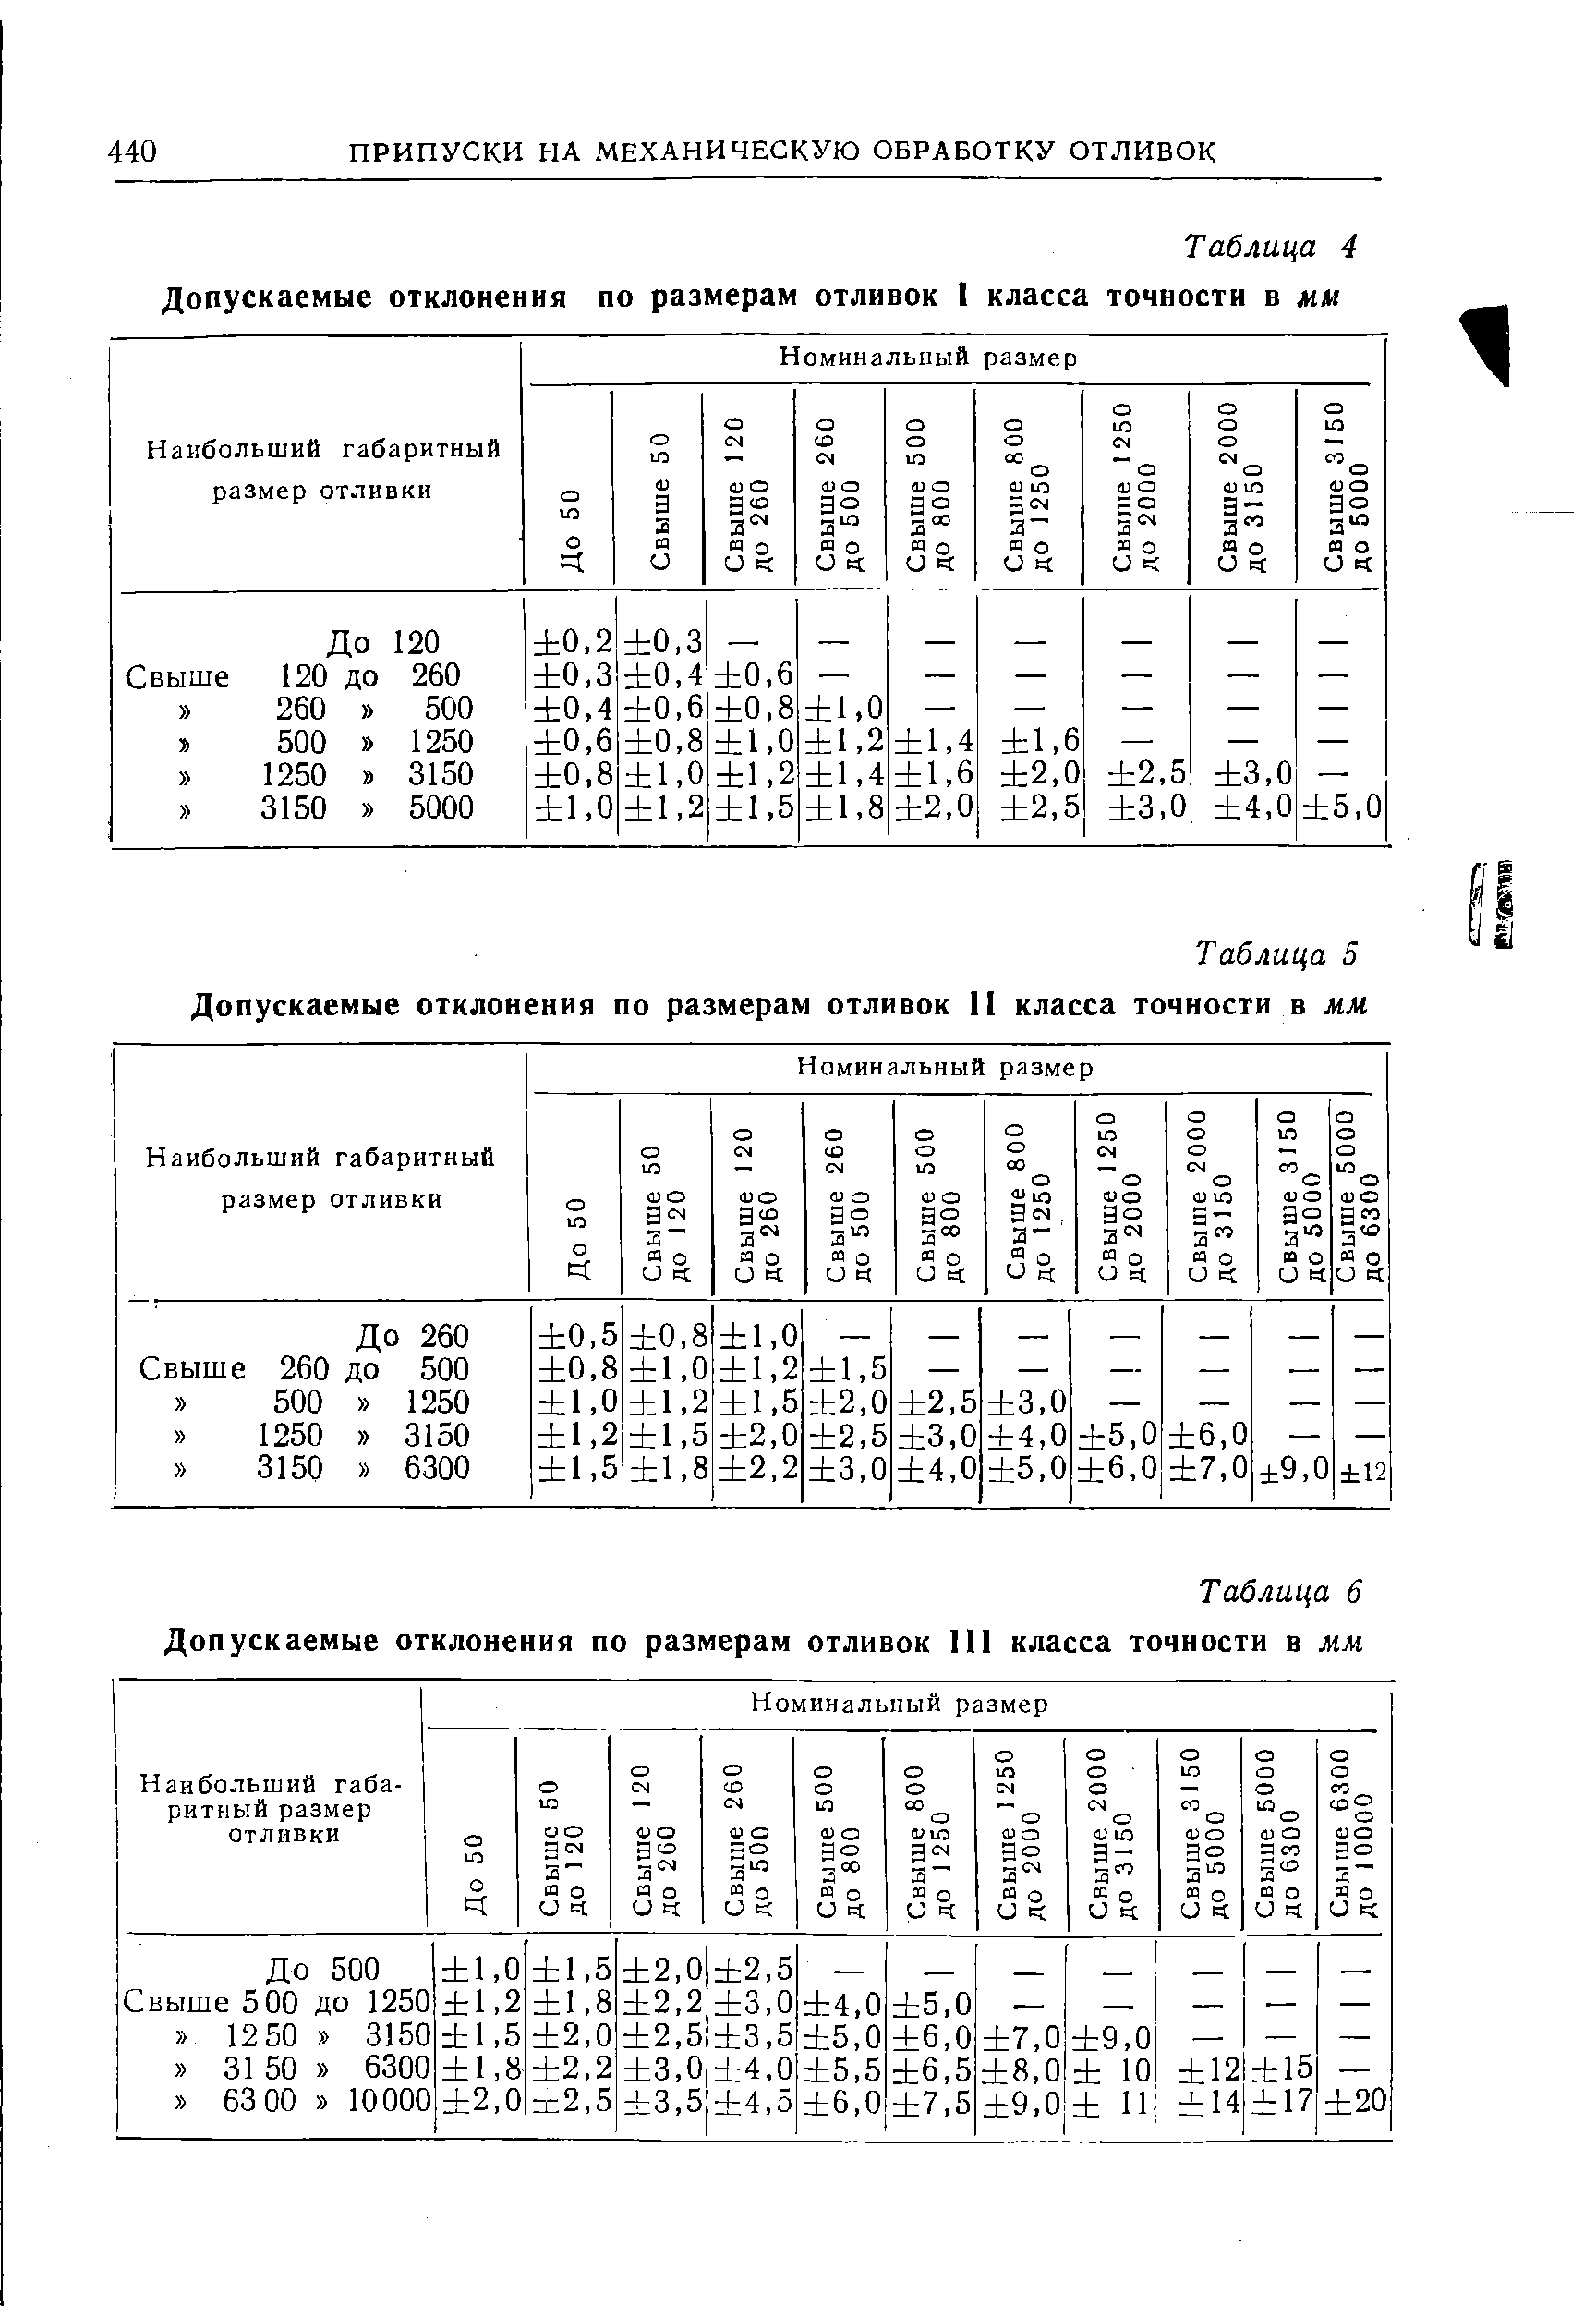 Таблица 4 Допускаемые отклонения по размерам отливок I класса точности в м/и
